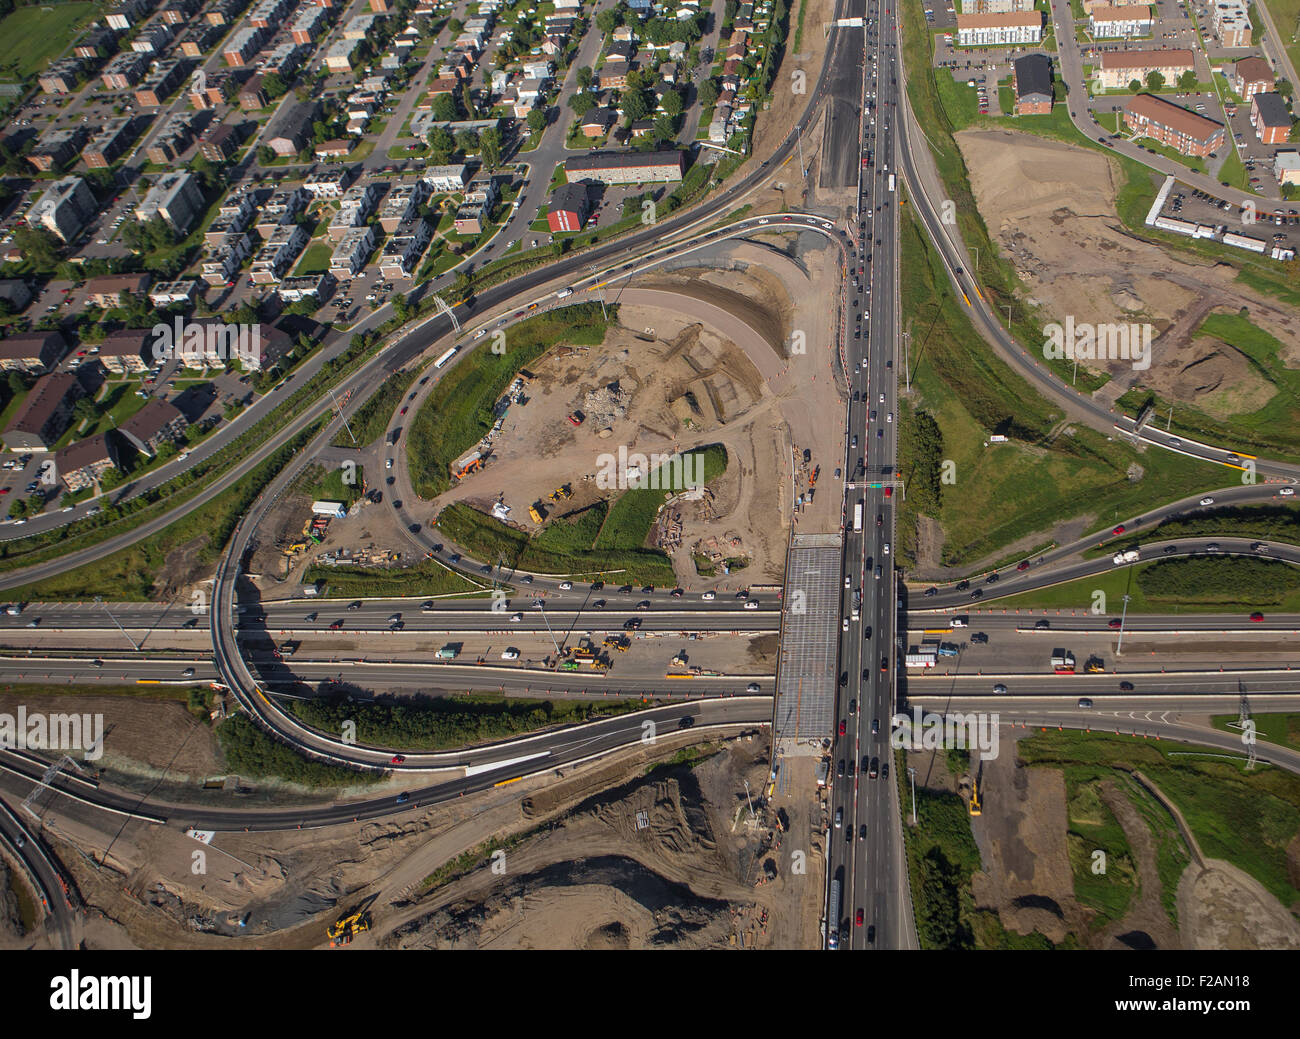 Bau De La Capitale (Felix-Leclerc) und Laurentienne (A-73) Autobahn Austausch ist in diesem Luftbild in Q abgebildet. Stockfoto